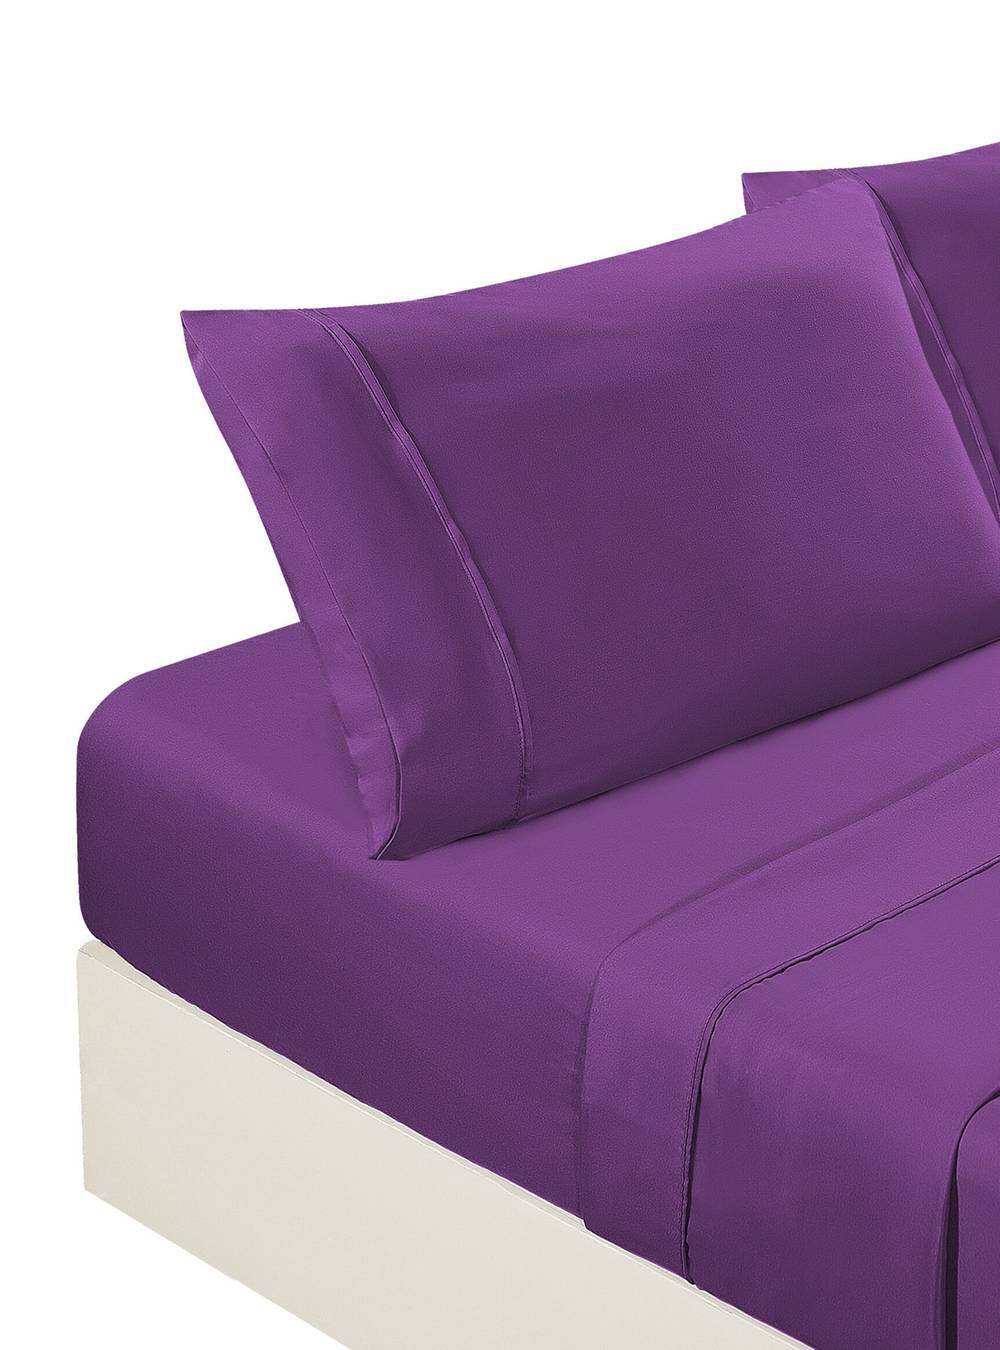 Stylo sábanas microfibra unicolor 2 plazas (color: púrpura)